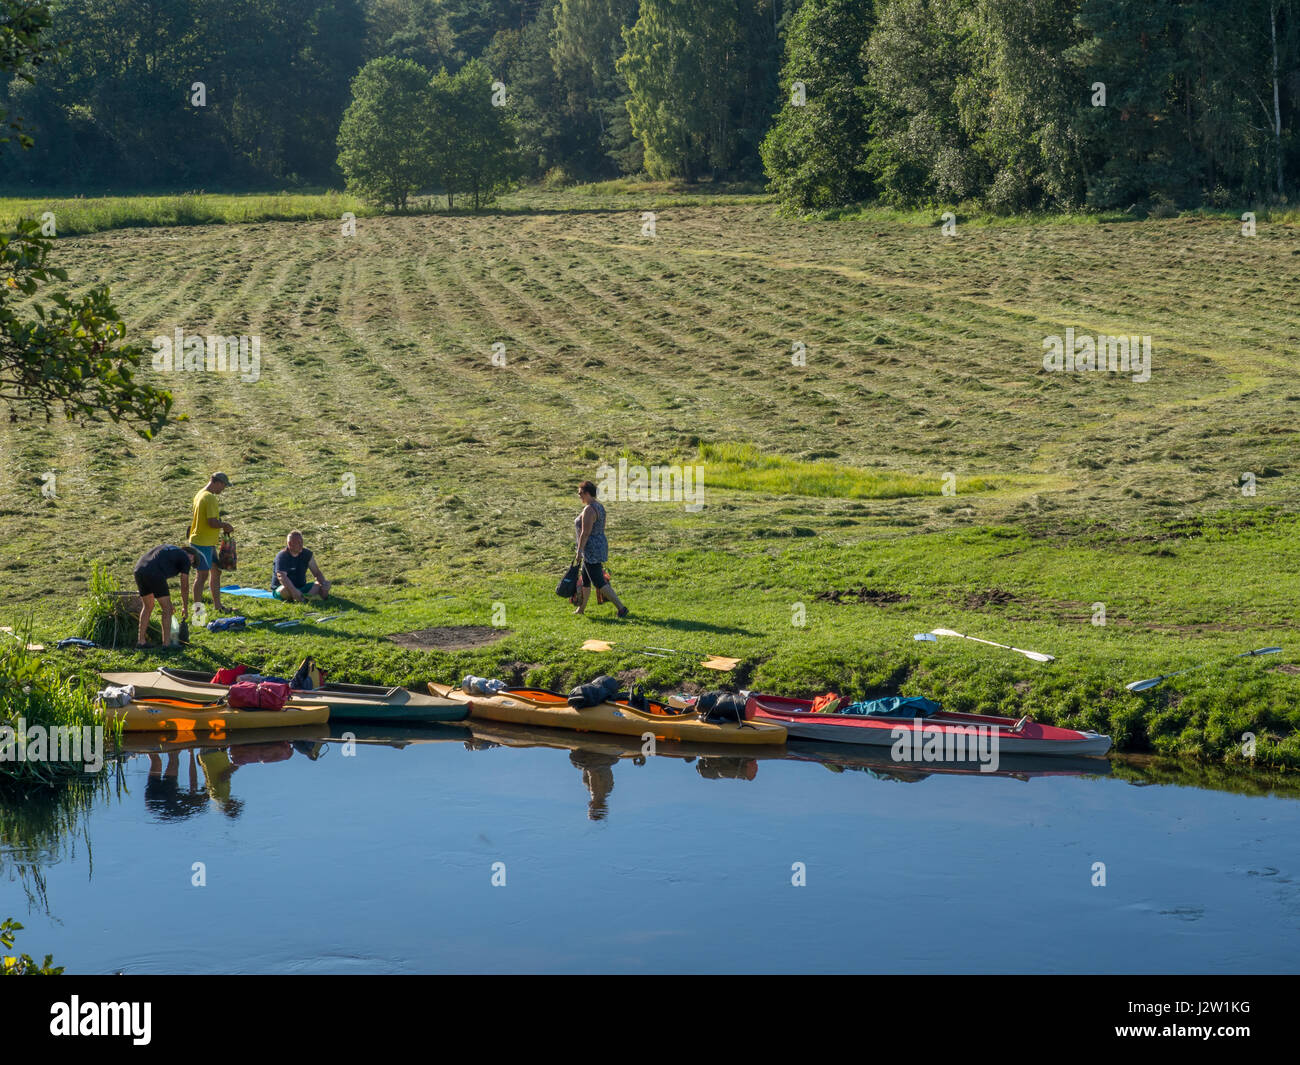 River Wda, Polonia - 25 agosto 2016: Kayak presso una banca di un fiume Wda Foto Stock